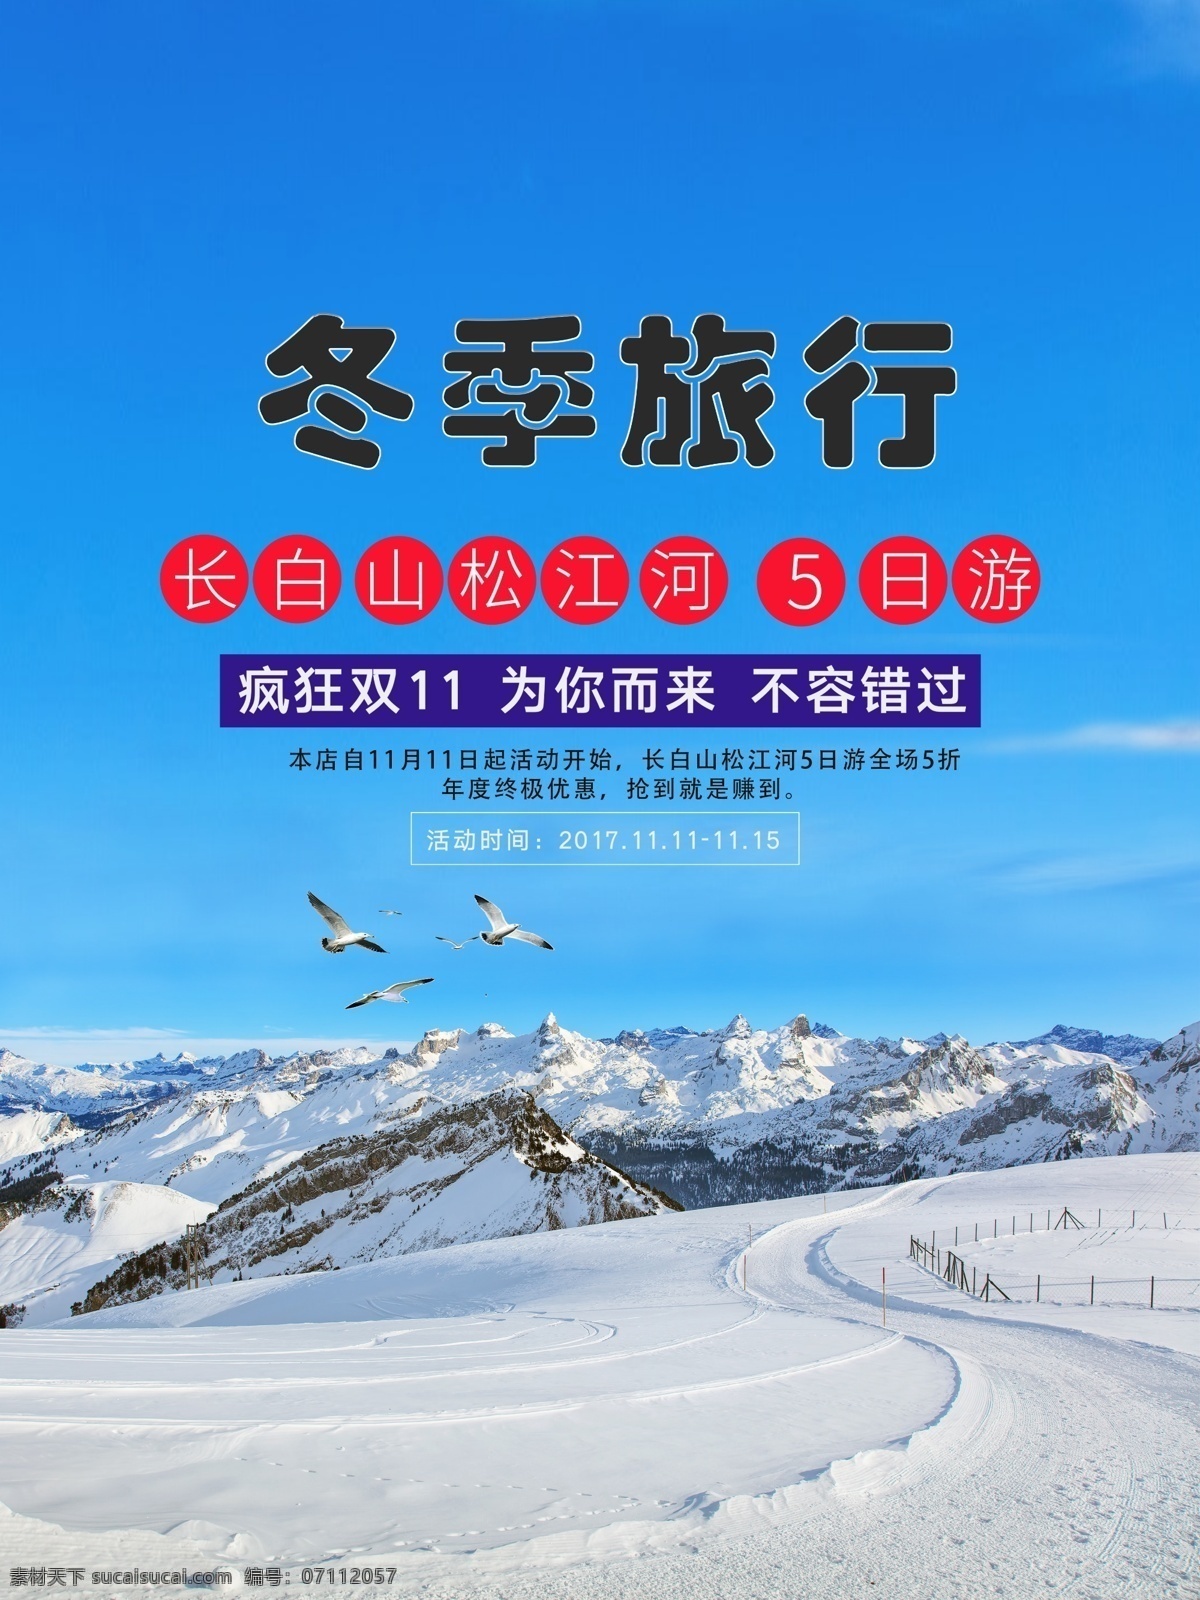 松江河 冬季 旅行 促销 海报 促销海报 冬季旅行